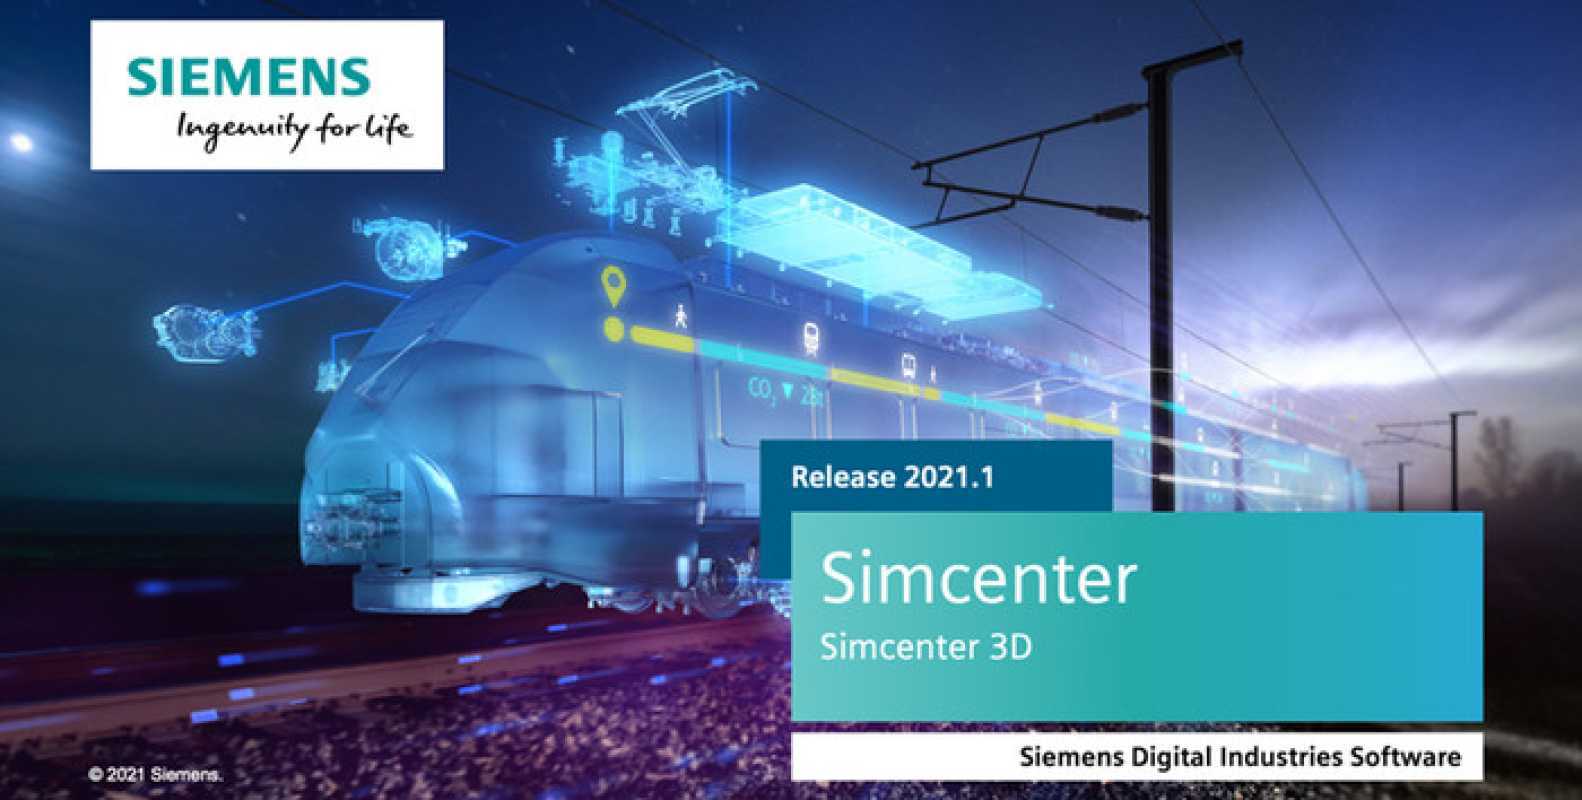 Jual Siemens Simcenter MAGNET Suite 2021 x64 di Seller echoNOMIC-PC - Kota Bandung, Jawa Barat | Blibli